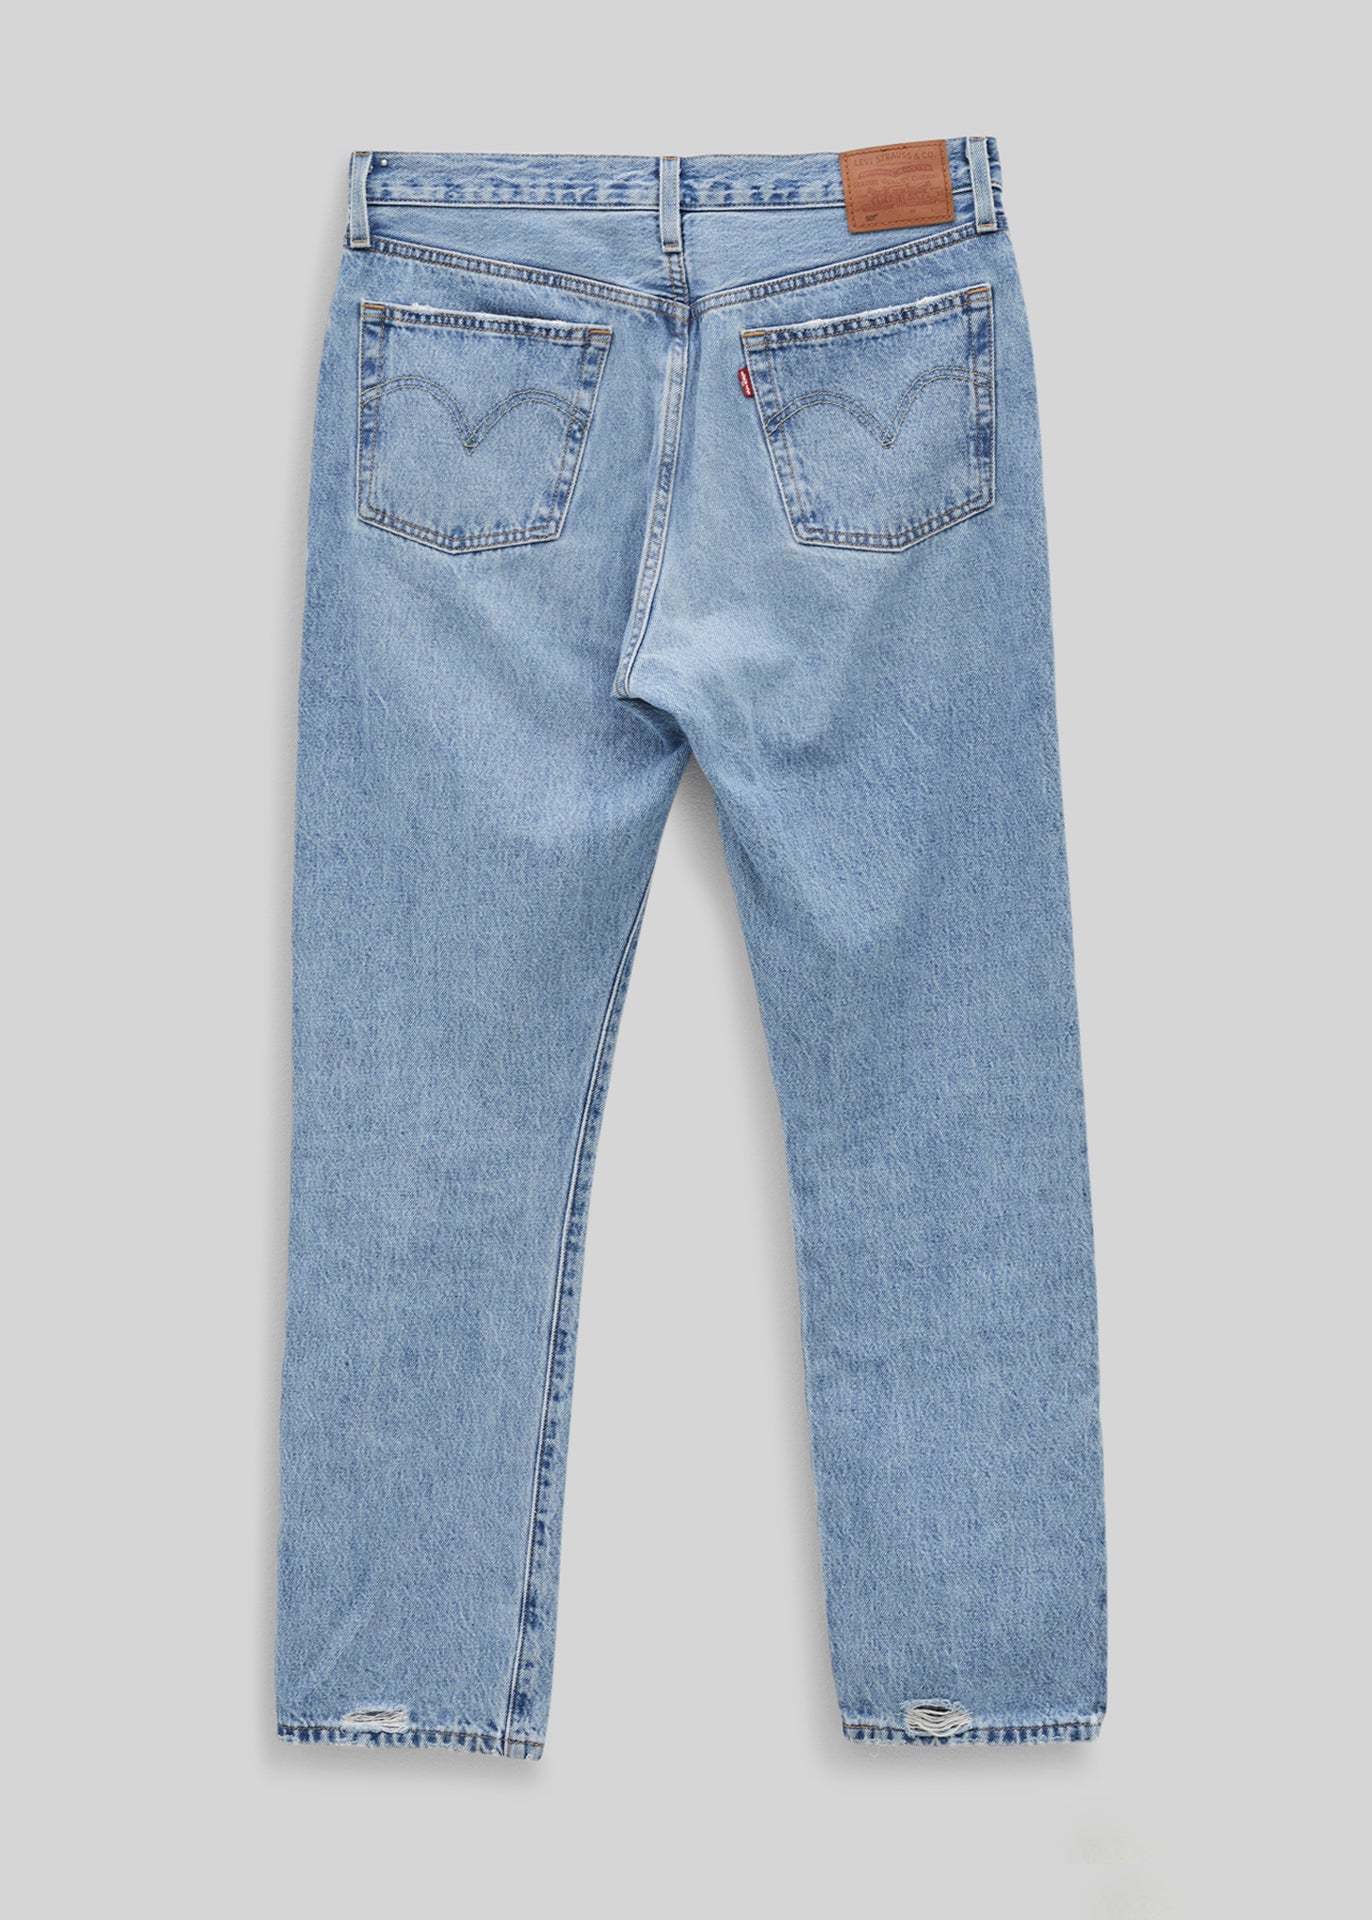 Levi's 501 jeans - 30